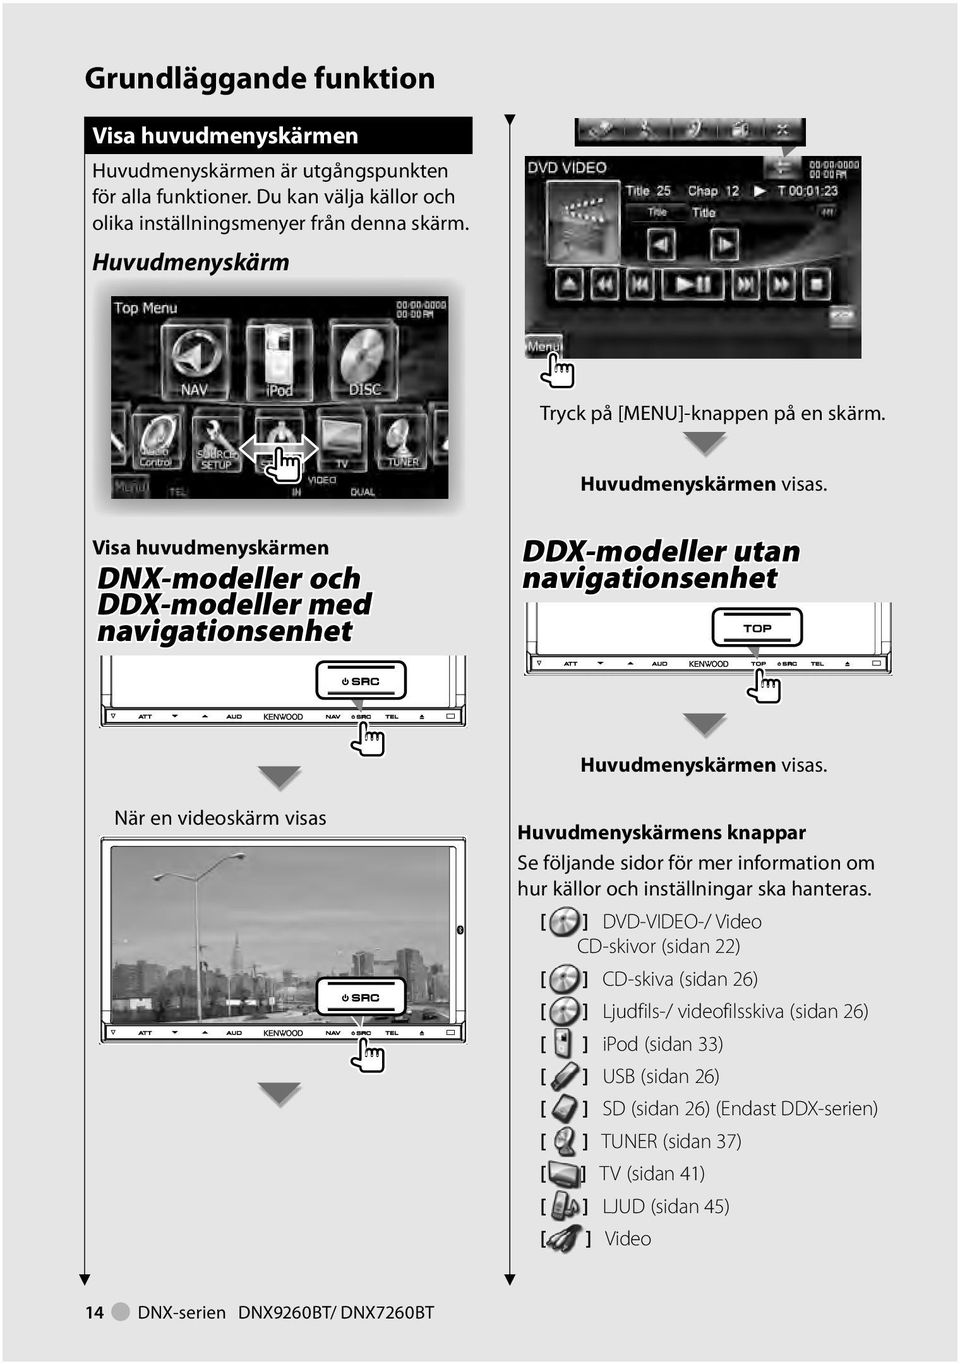 Visa huvudmenyskärmen DNX-modeller och DDX-modeller med navigationsenhet DDX-modeller utan navigationsenhet Huvudmenyskärmen visas.